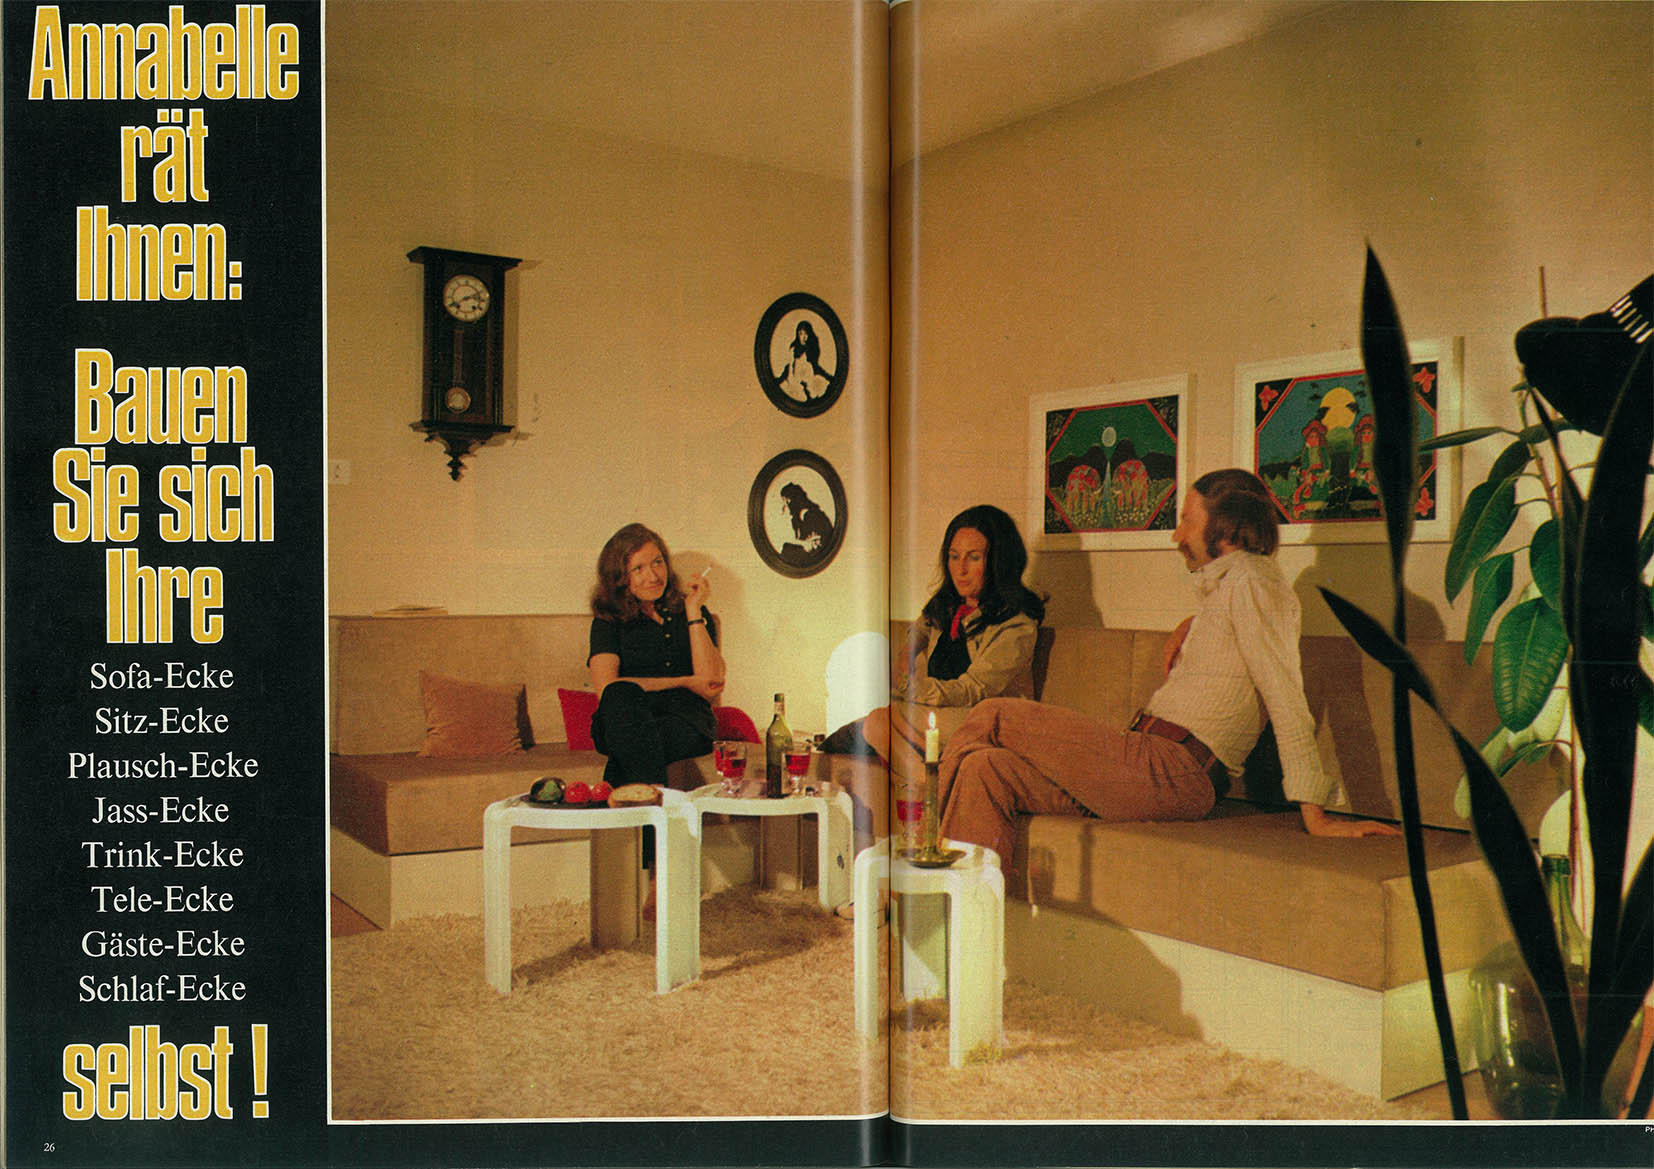 tre persone su un divano in un immagine degli anni 60